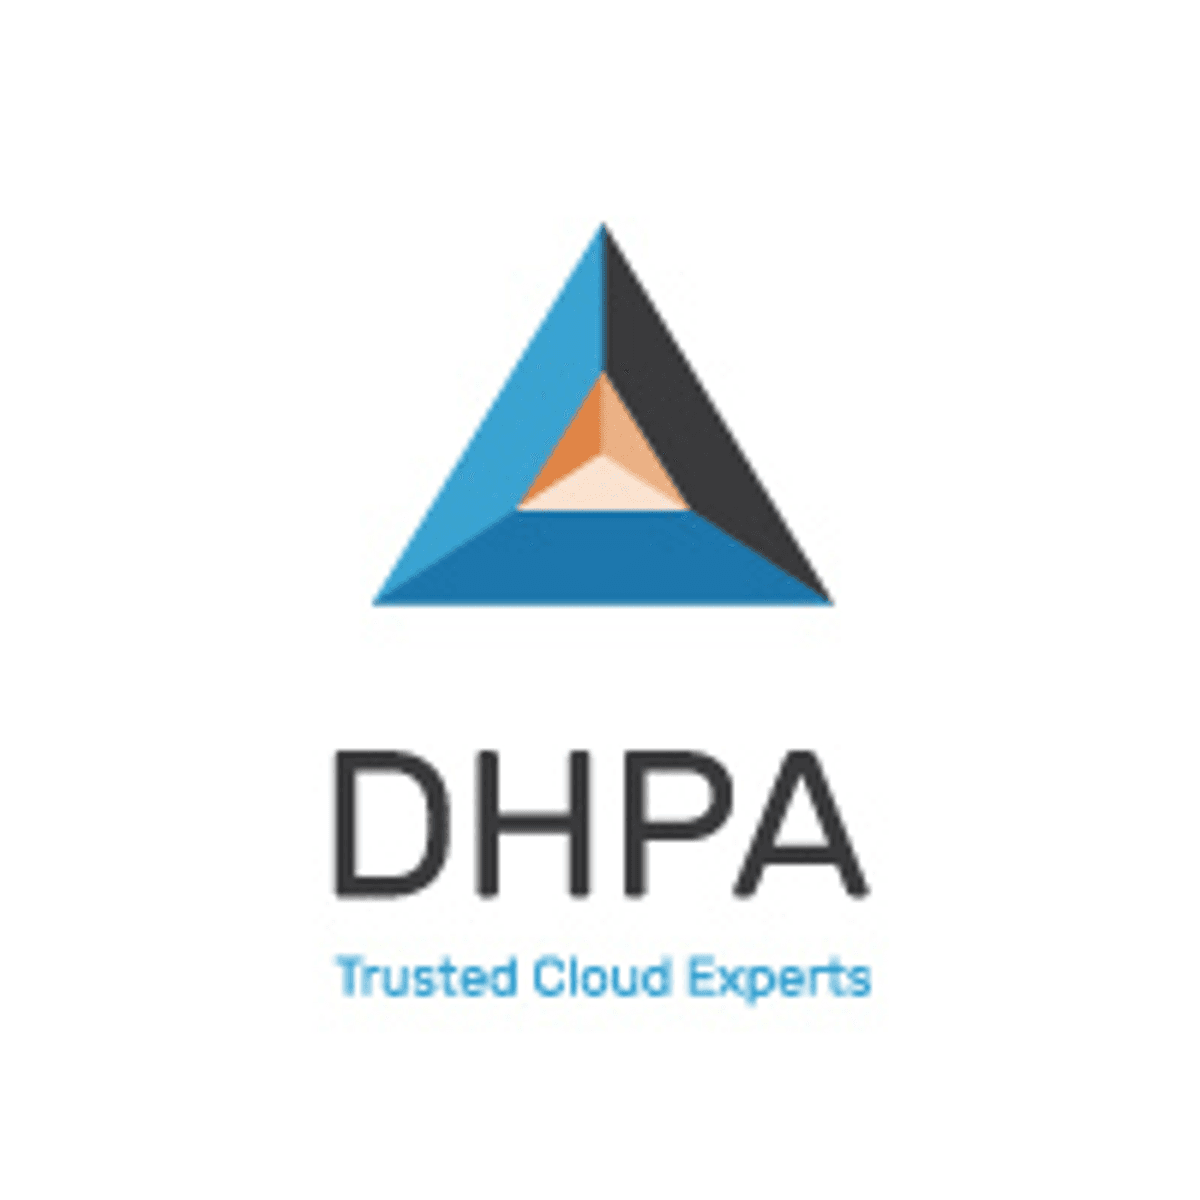 DHPA stelt factsheets over GDPR en data privacy beschikbaar image